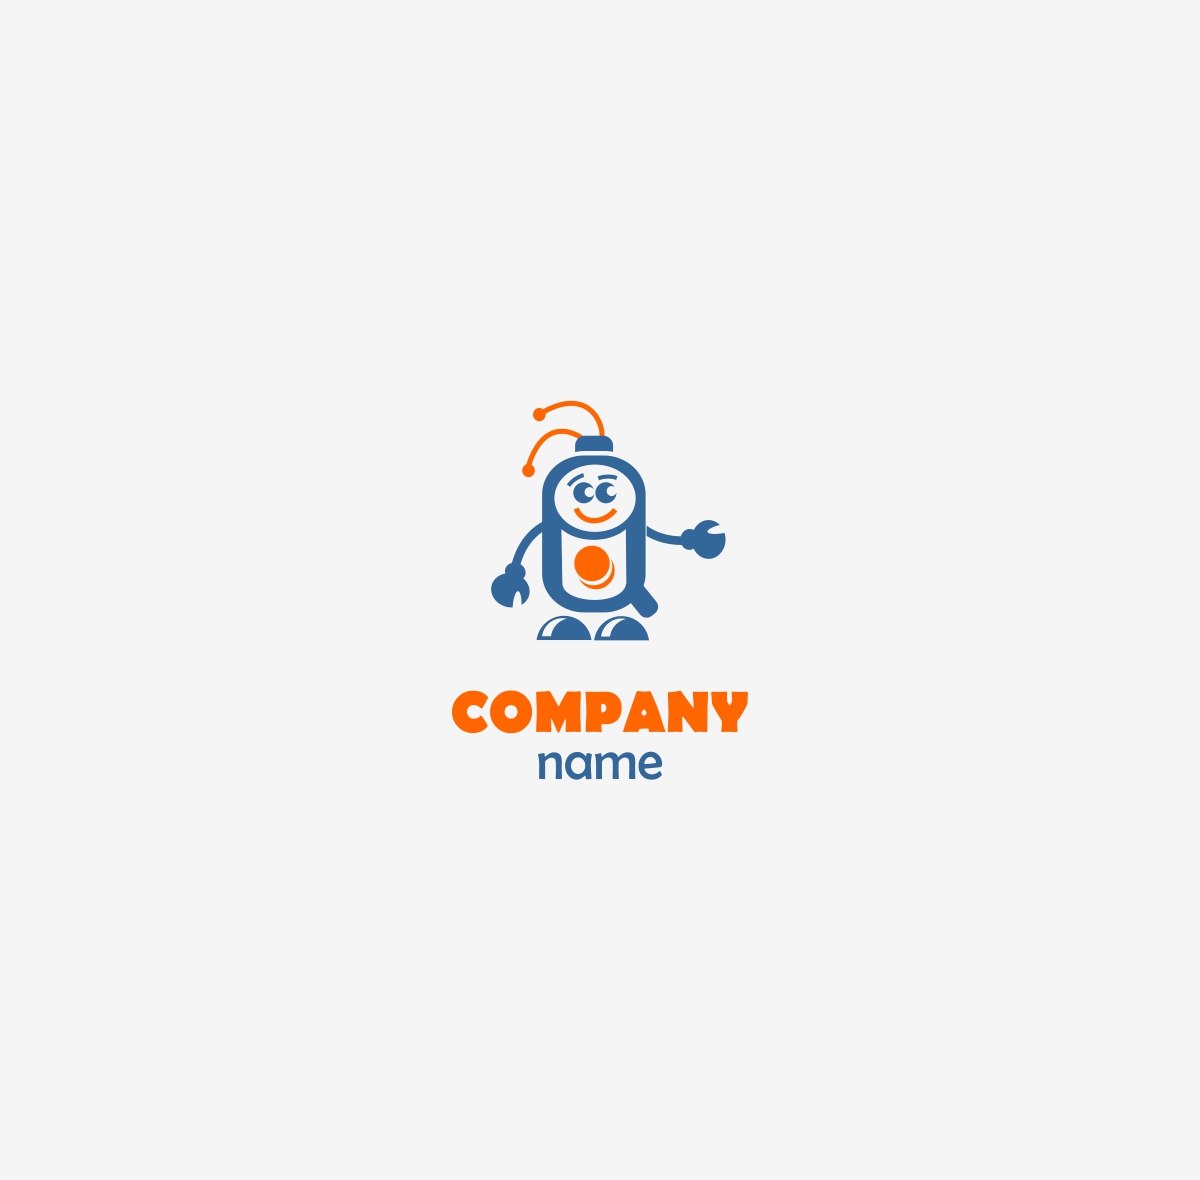 Логотип для компании. IT-технологии.